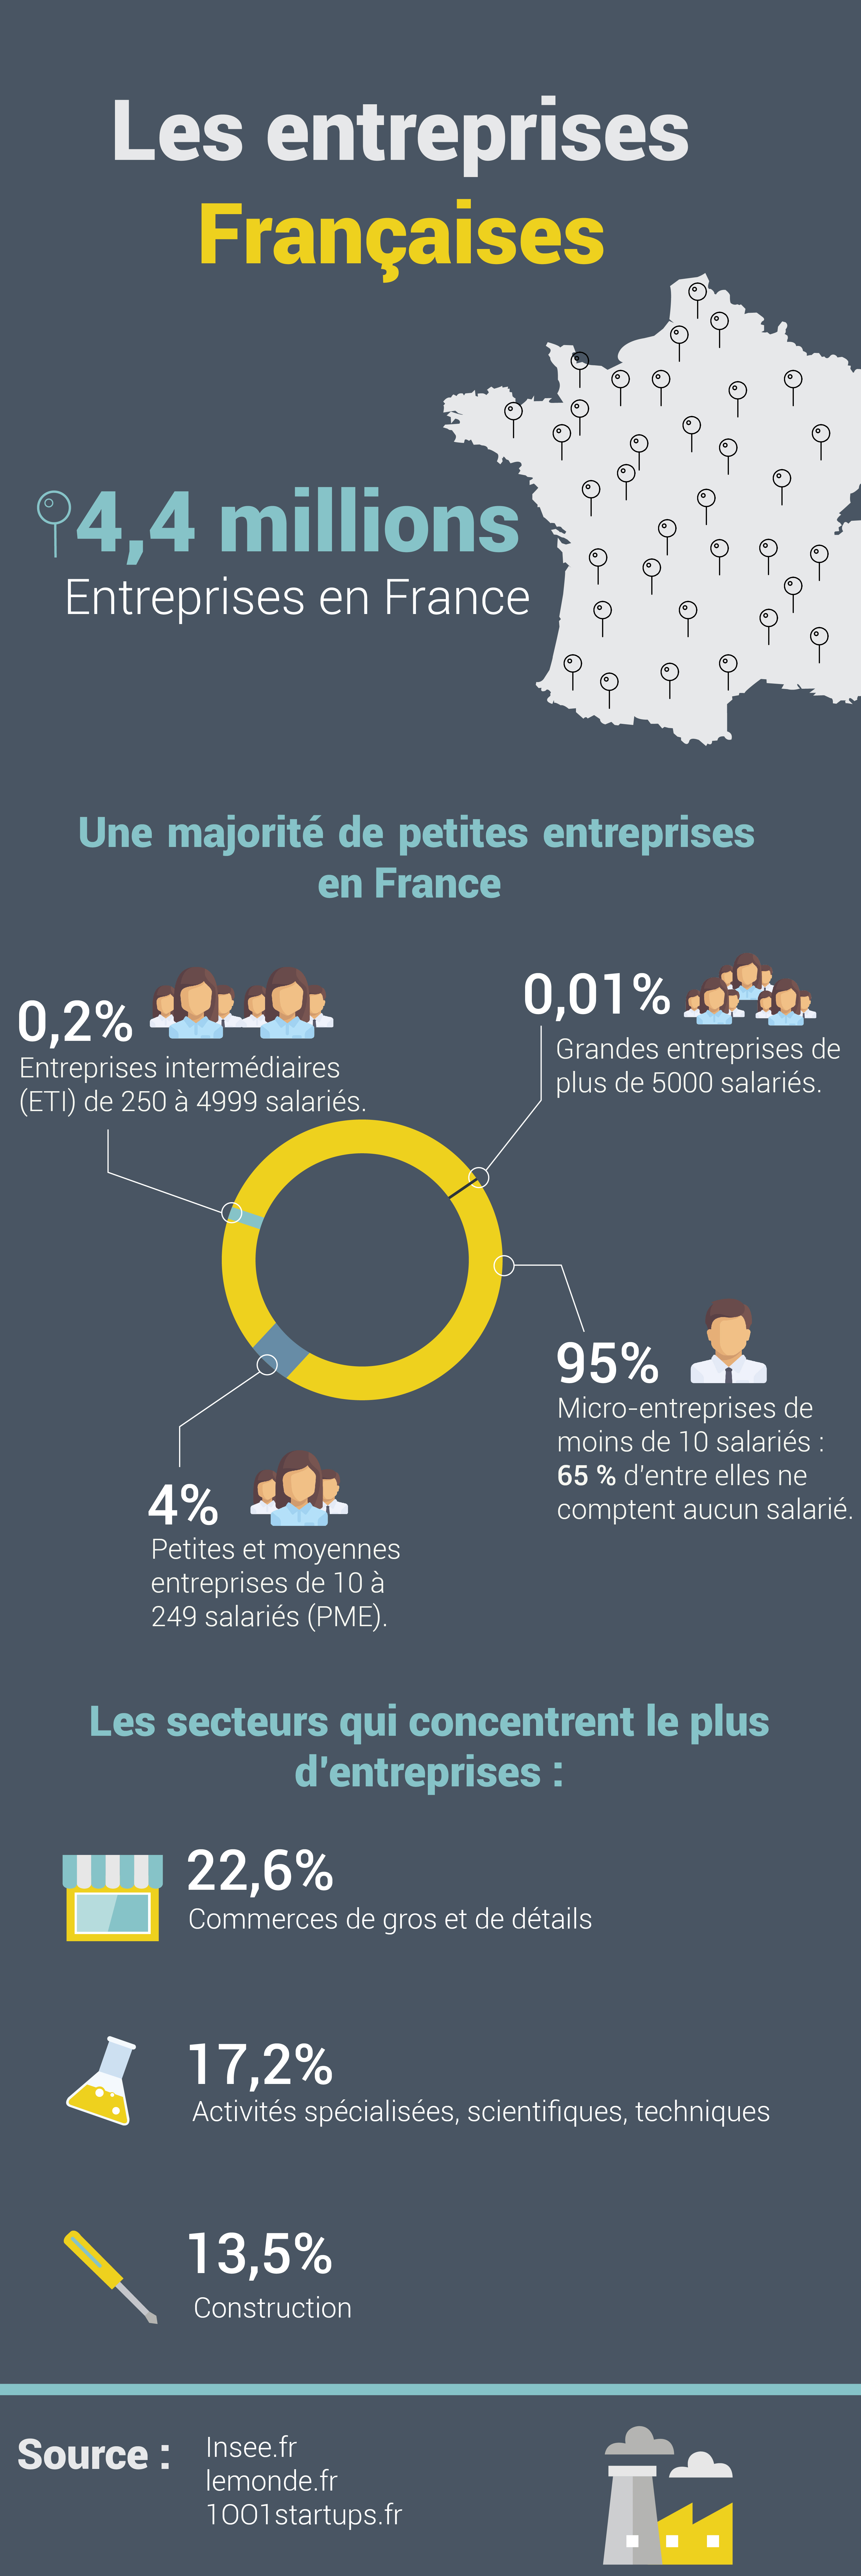 Les chiffres clés de l'entreprise Française